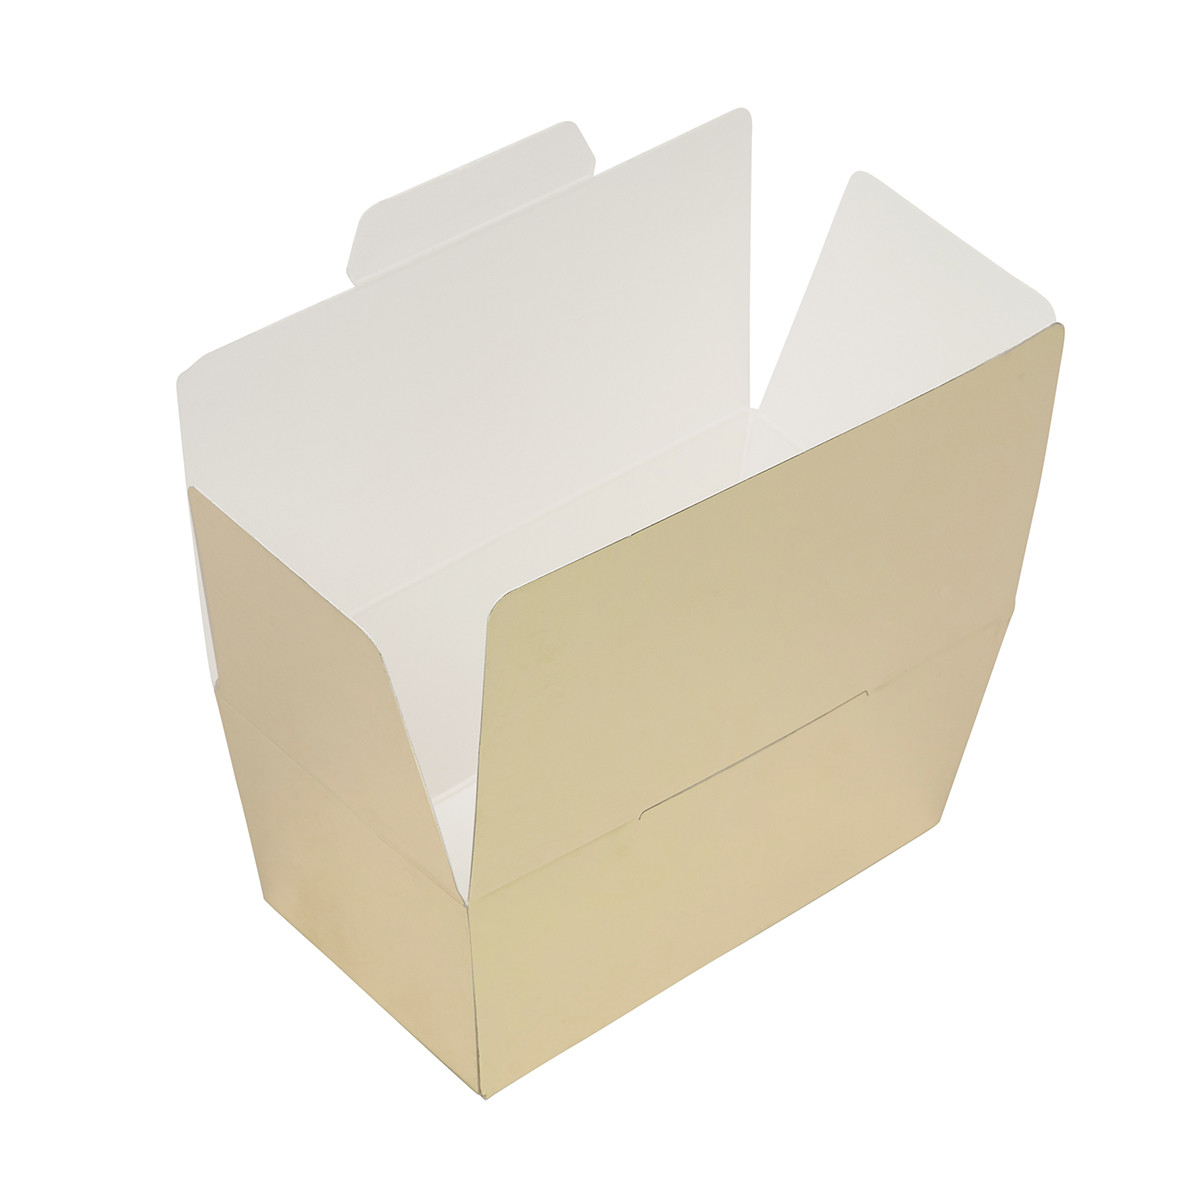 Bonbon box Gold Metallic -375 grams- 3 pieces